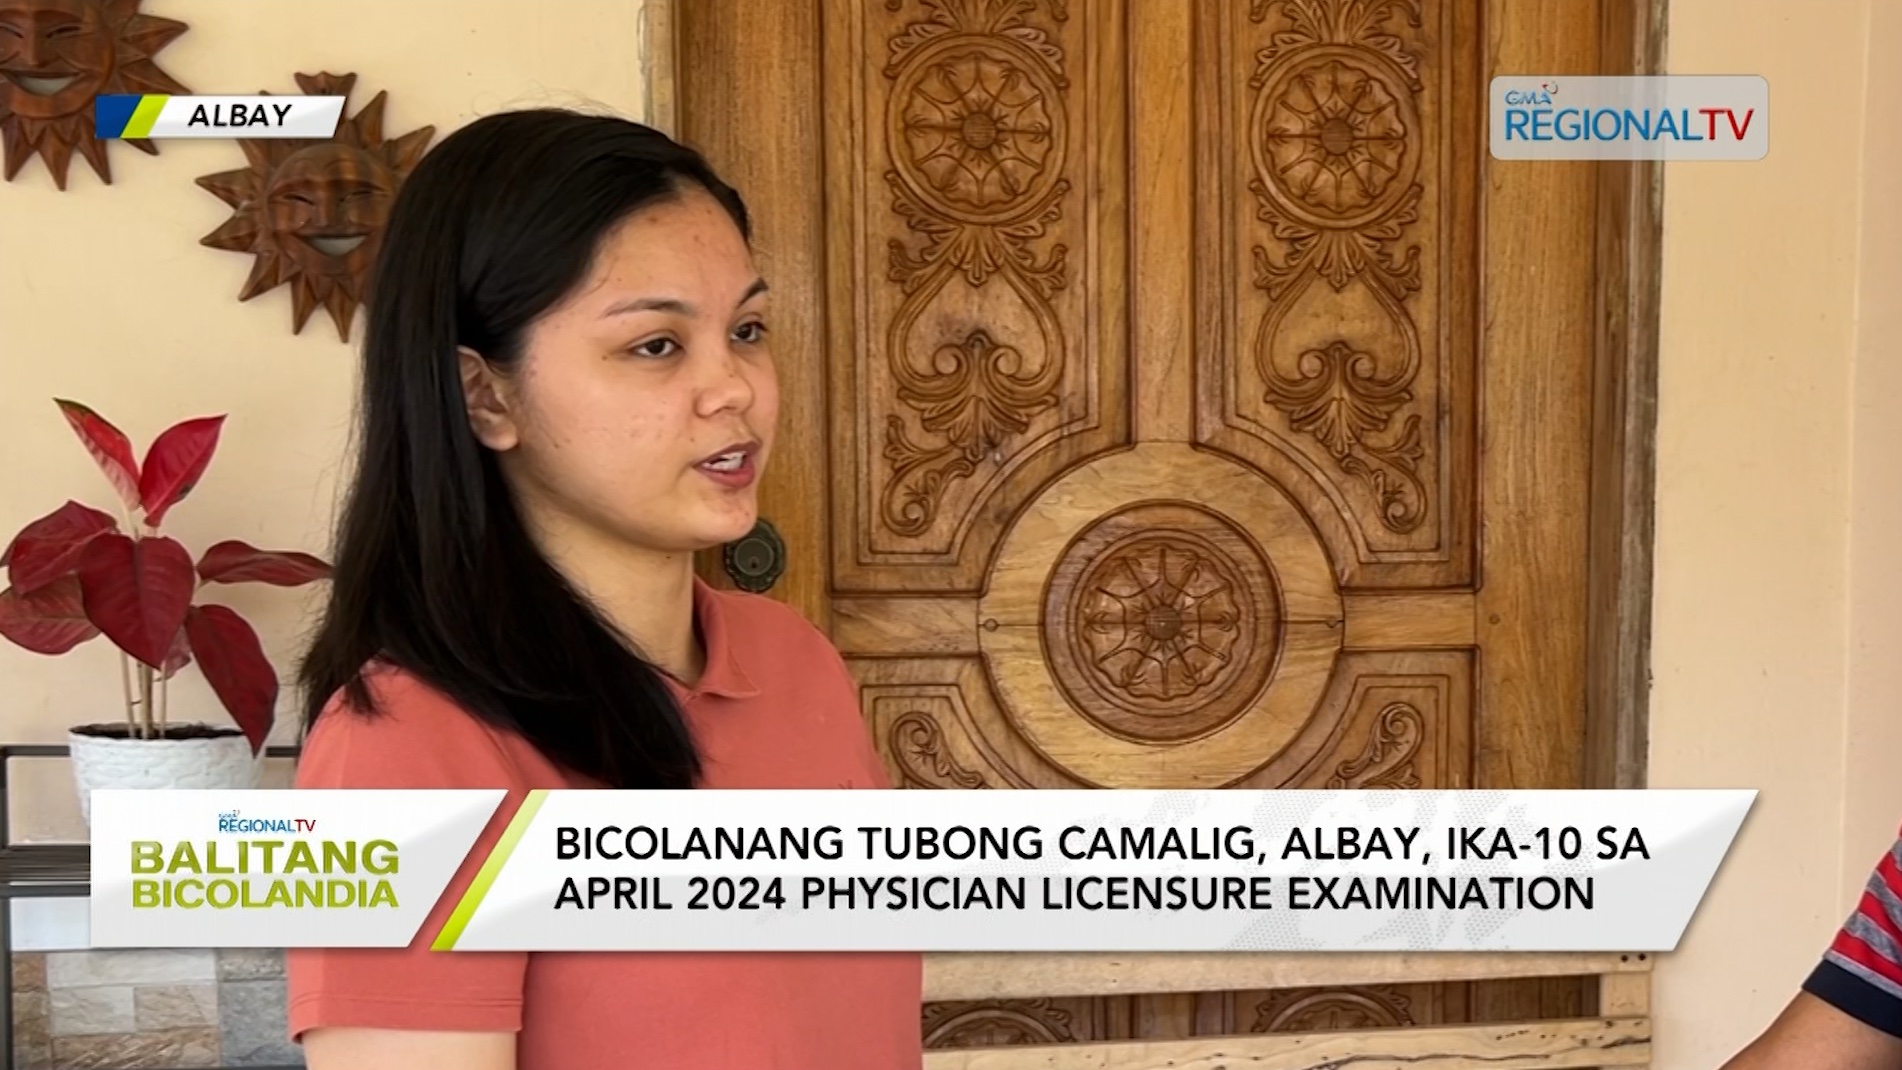 Bicolanang tubong Camalig, ika-10 sa April 2024 Physician Licensure Examination